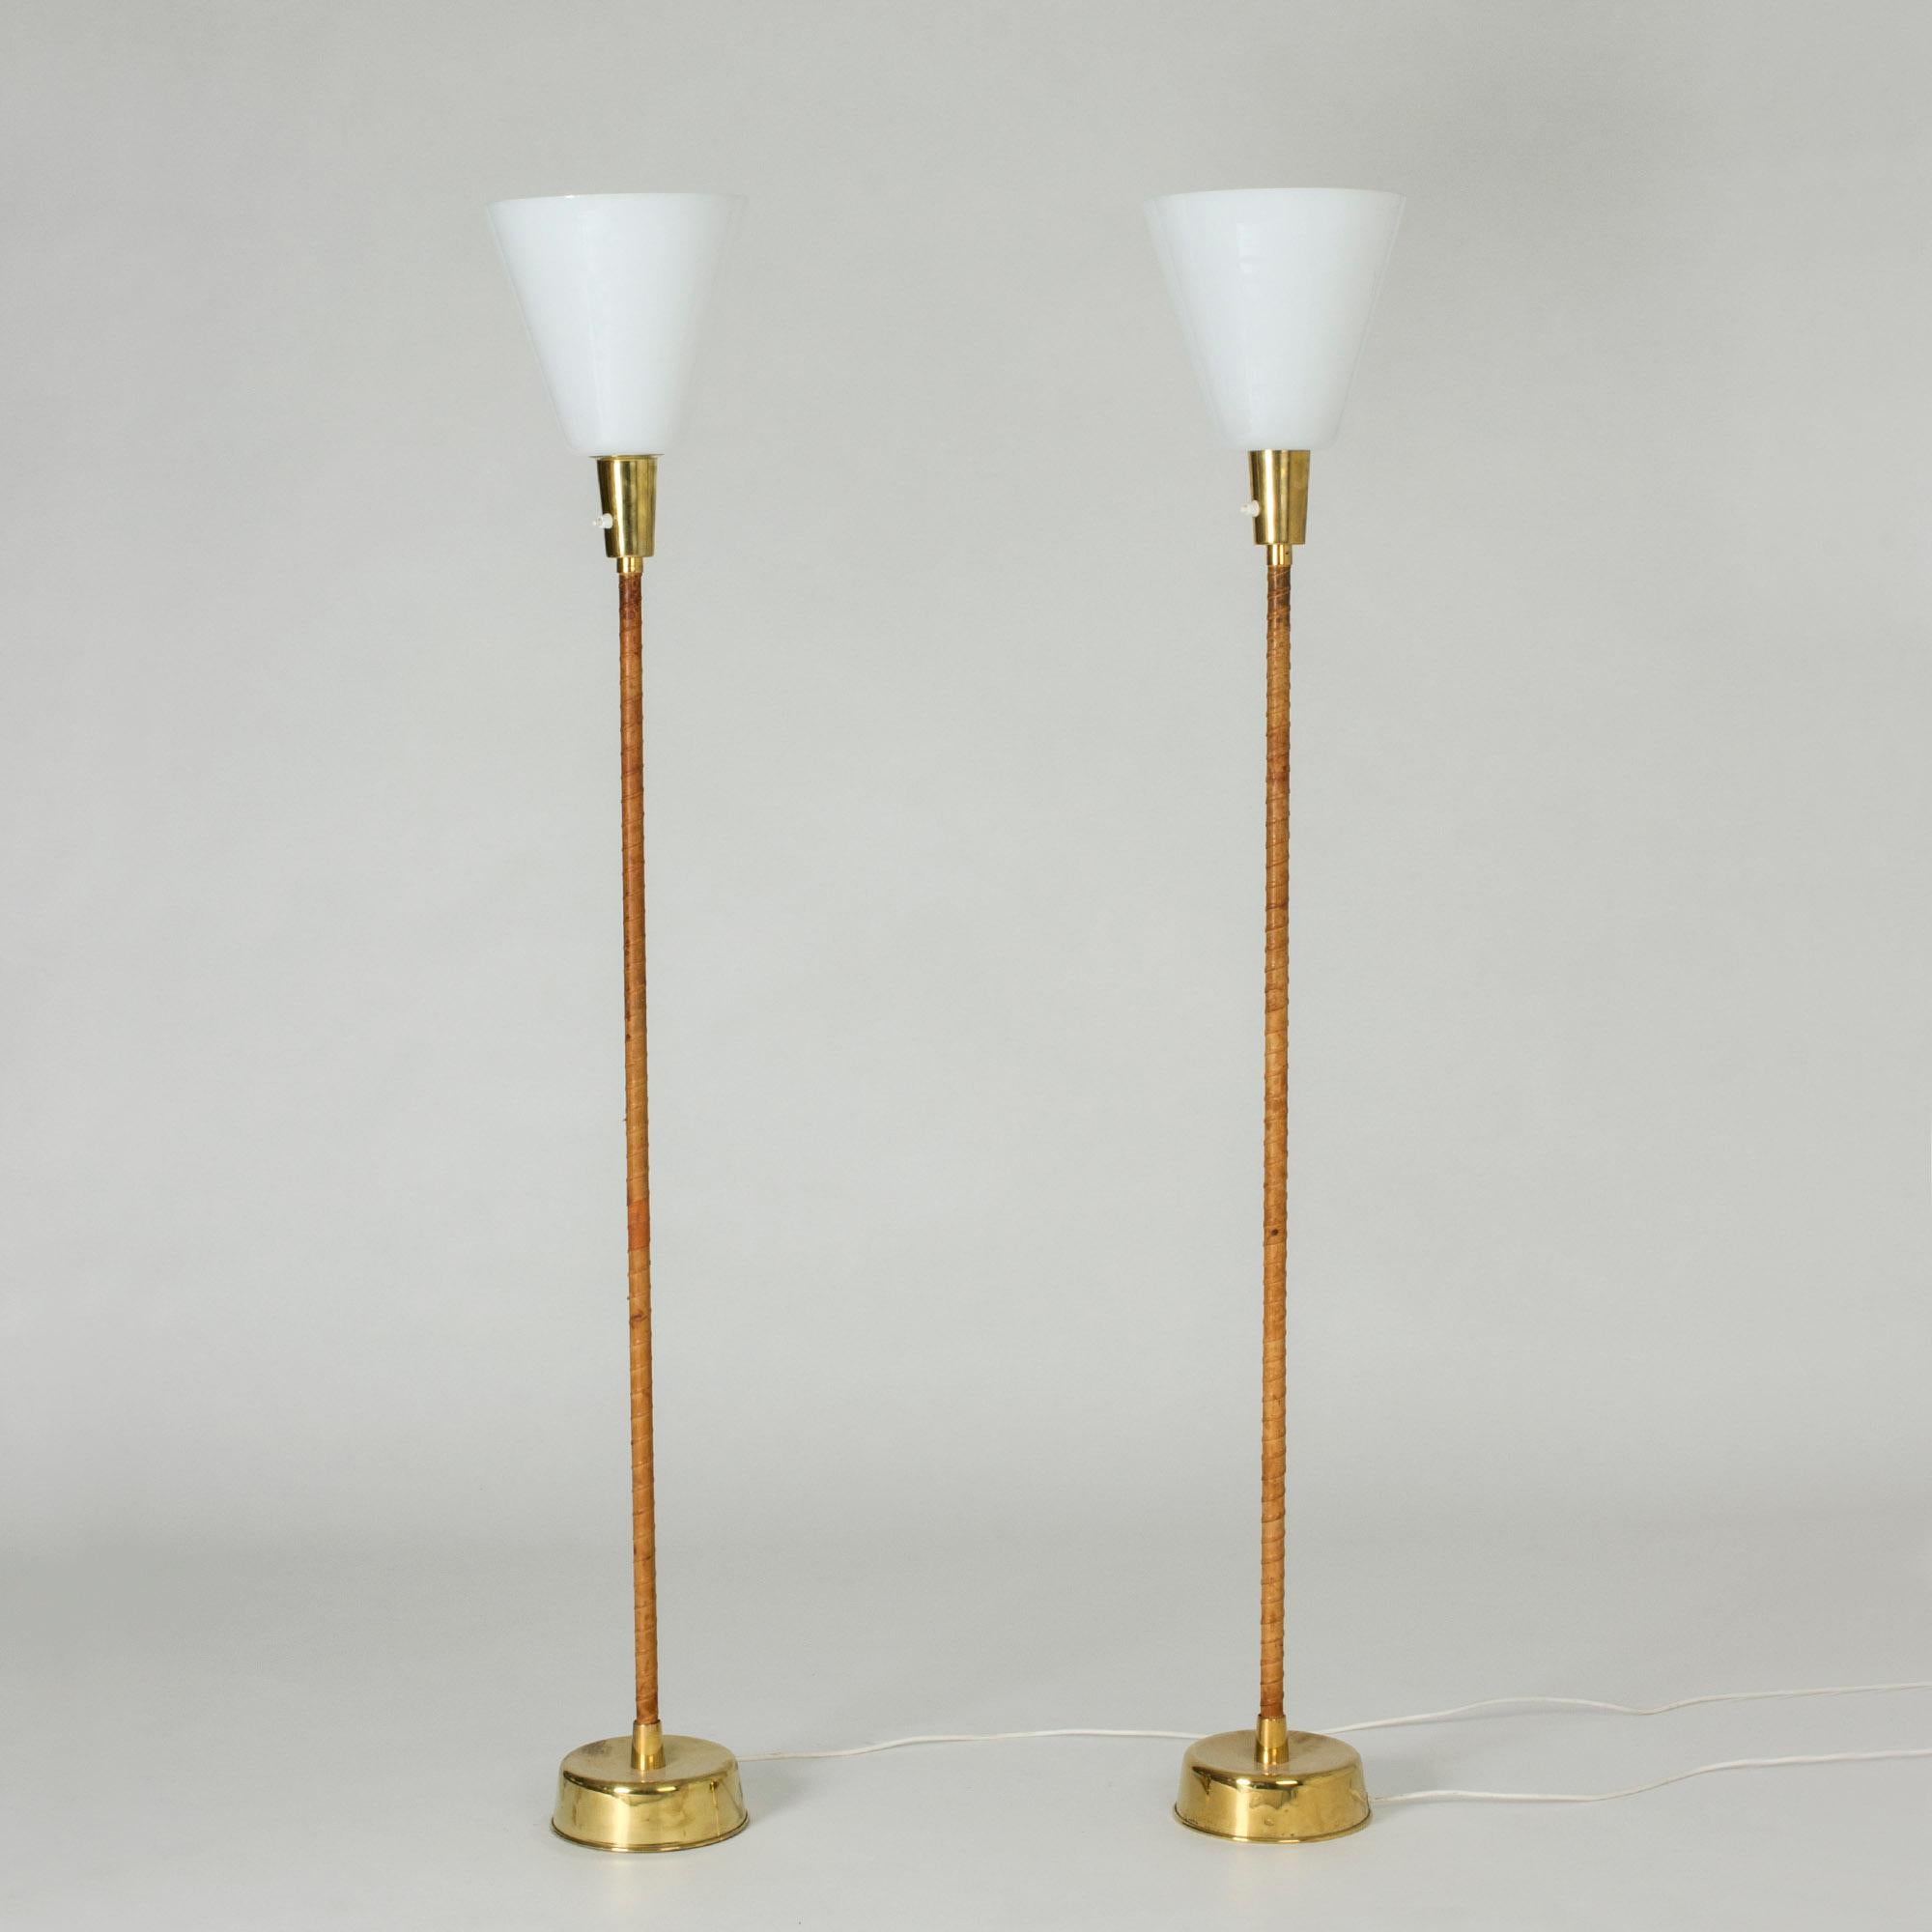 Ein Paar Stehlampen von Lisa Johansson-Pape, die durch ihre Schlichtheit bestechen. Sockel aus Messing und umwickelte Griffe aus braunem Leder, voluminöse weiße Lampenschirme. Die Schirme lassen sich leicht abnehmen, um die Lampen in Stehleuchten